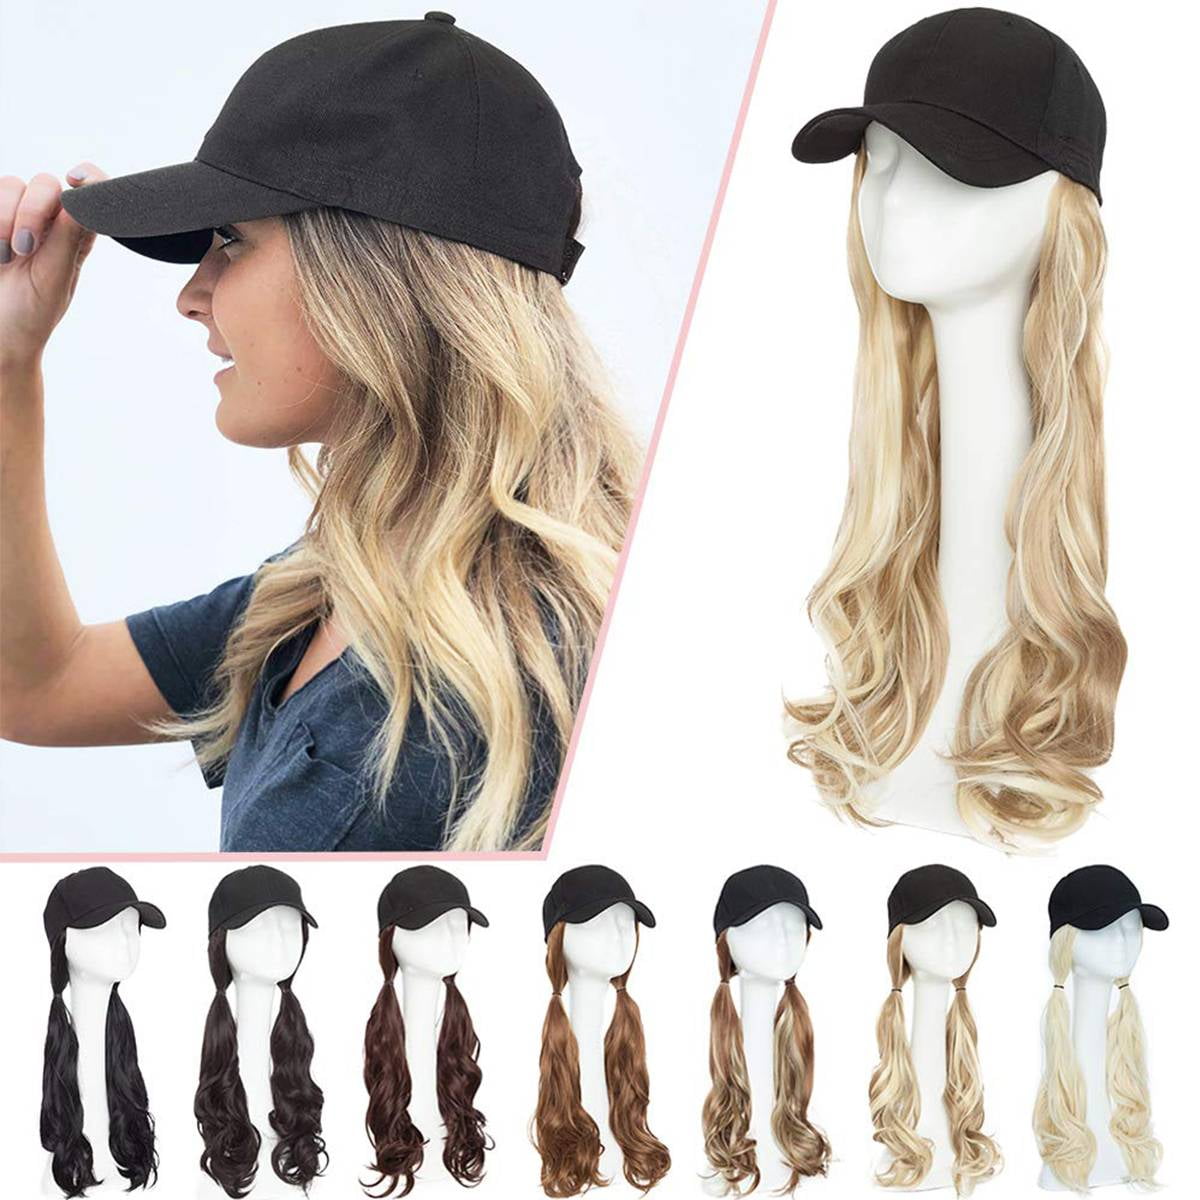 ★大人気商品★ Hat With Wig Attached Waves Curly Synthetic Fluffy Long Hair Baseball Cap For Women